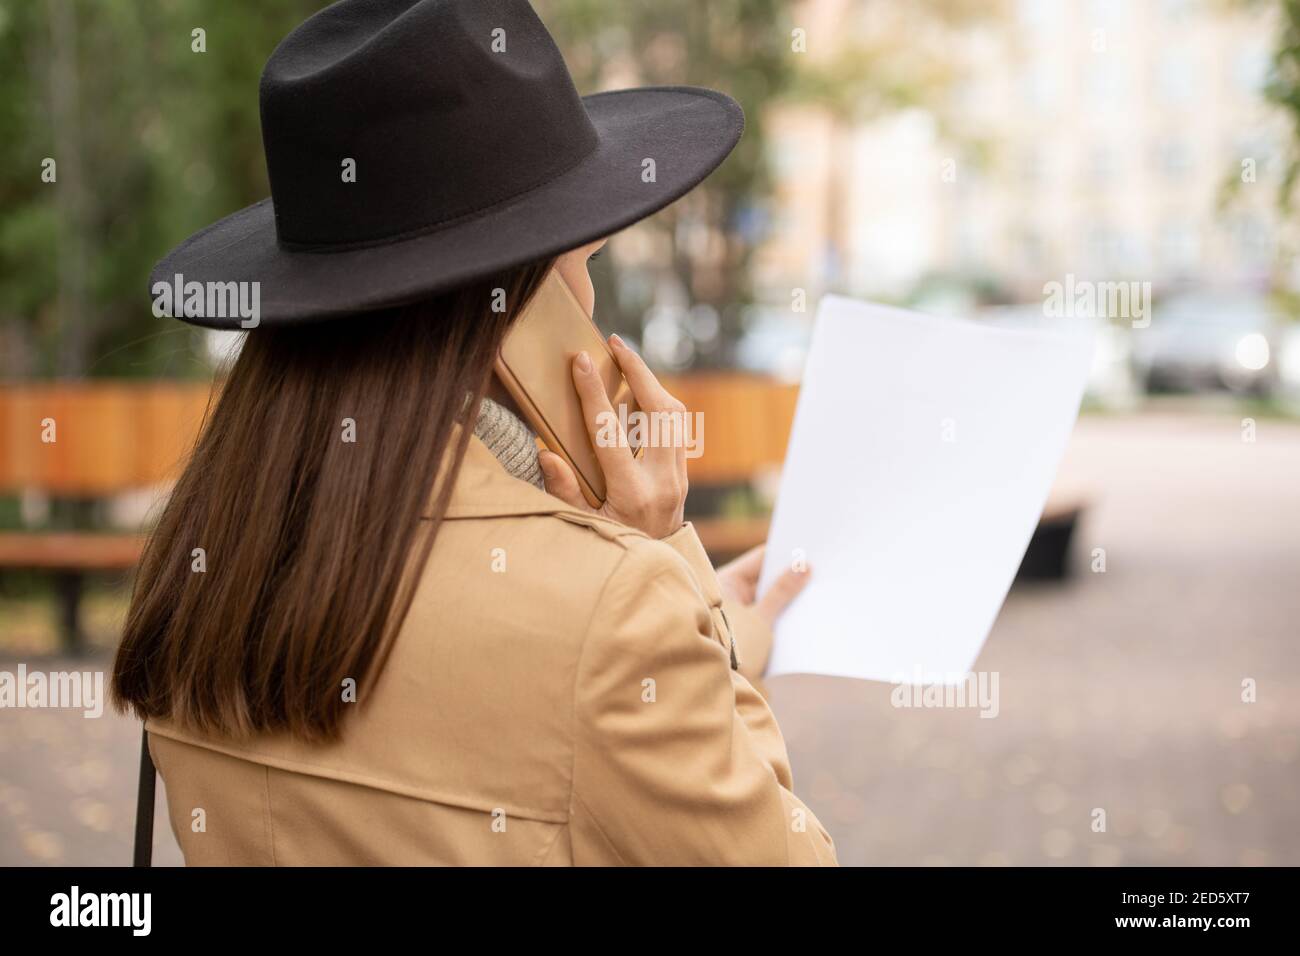 Rückansicht der jungen eleganten Geschäftsfrau in beigem Trenchcoat und Schwarzer Hut, der auf Papier schaut und auf dem Handy spricht Im städtischen Umfeld Stockfoto